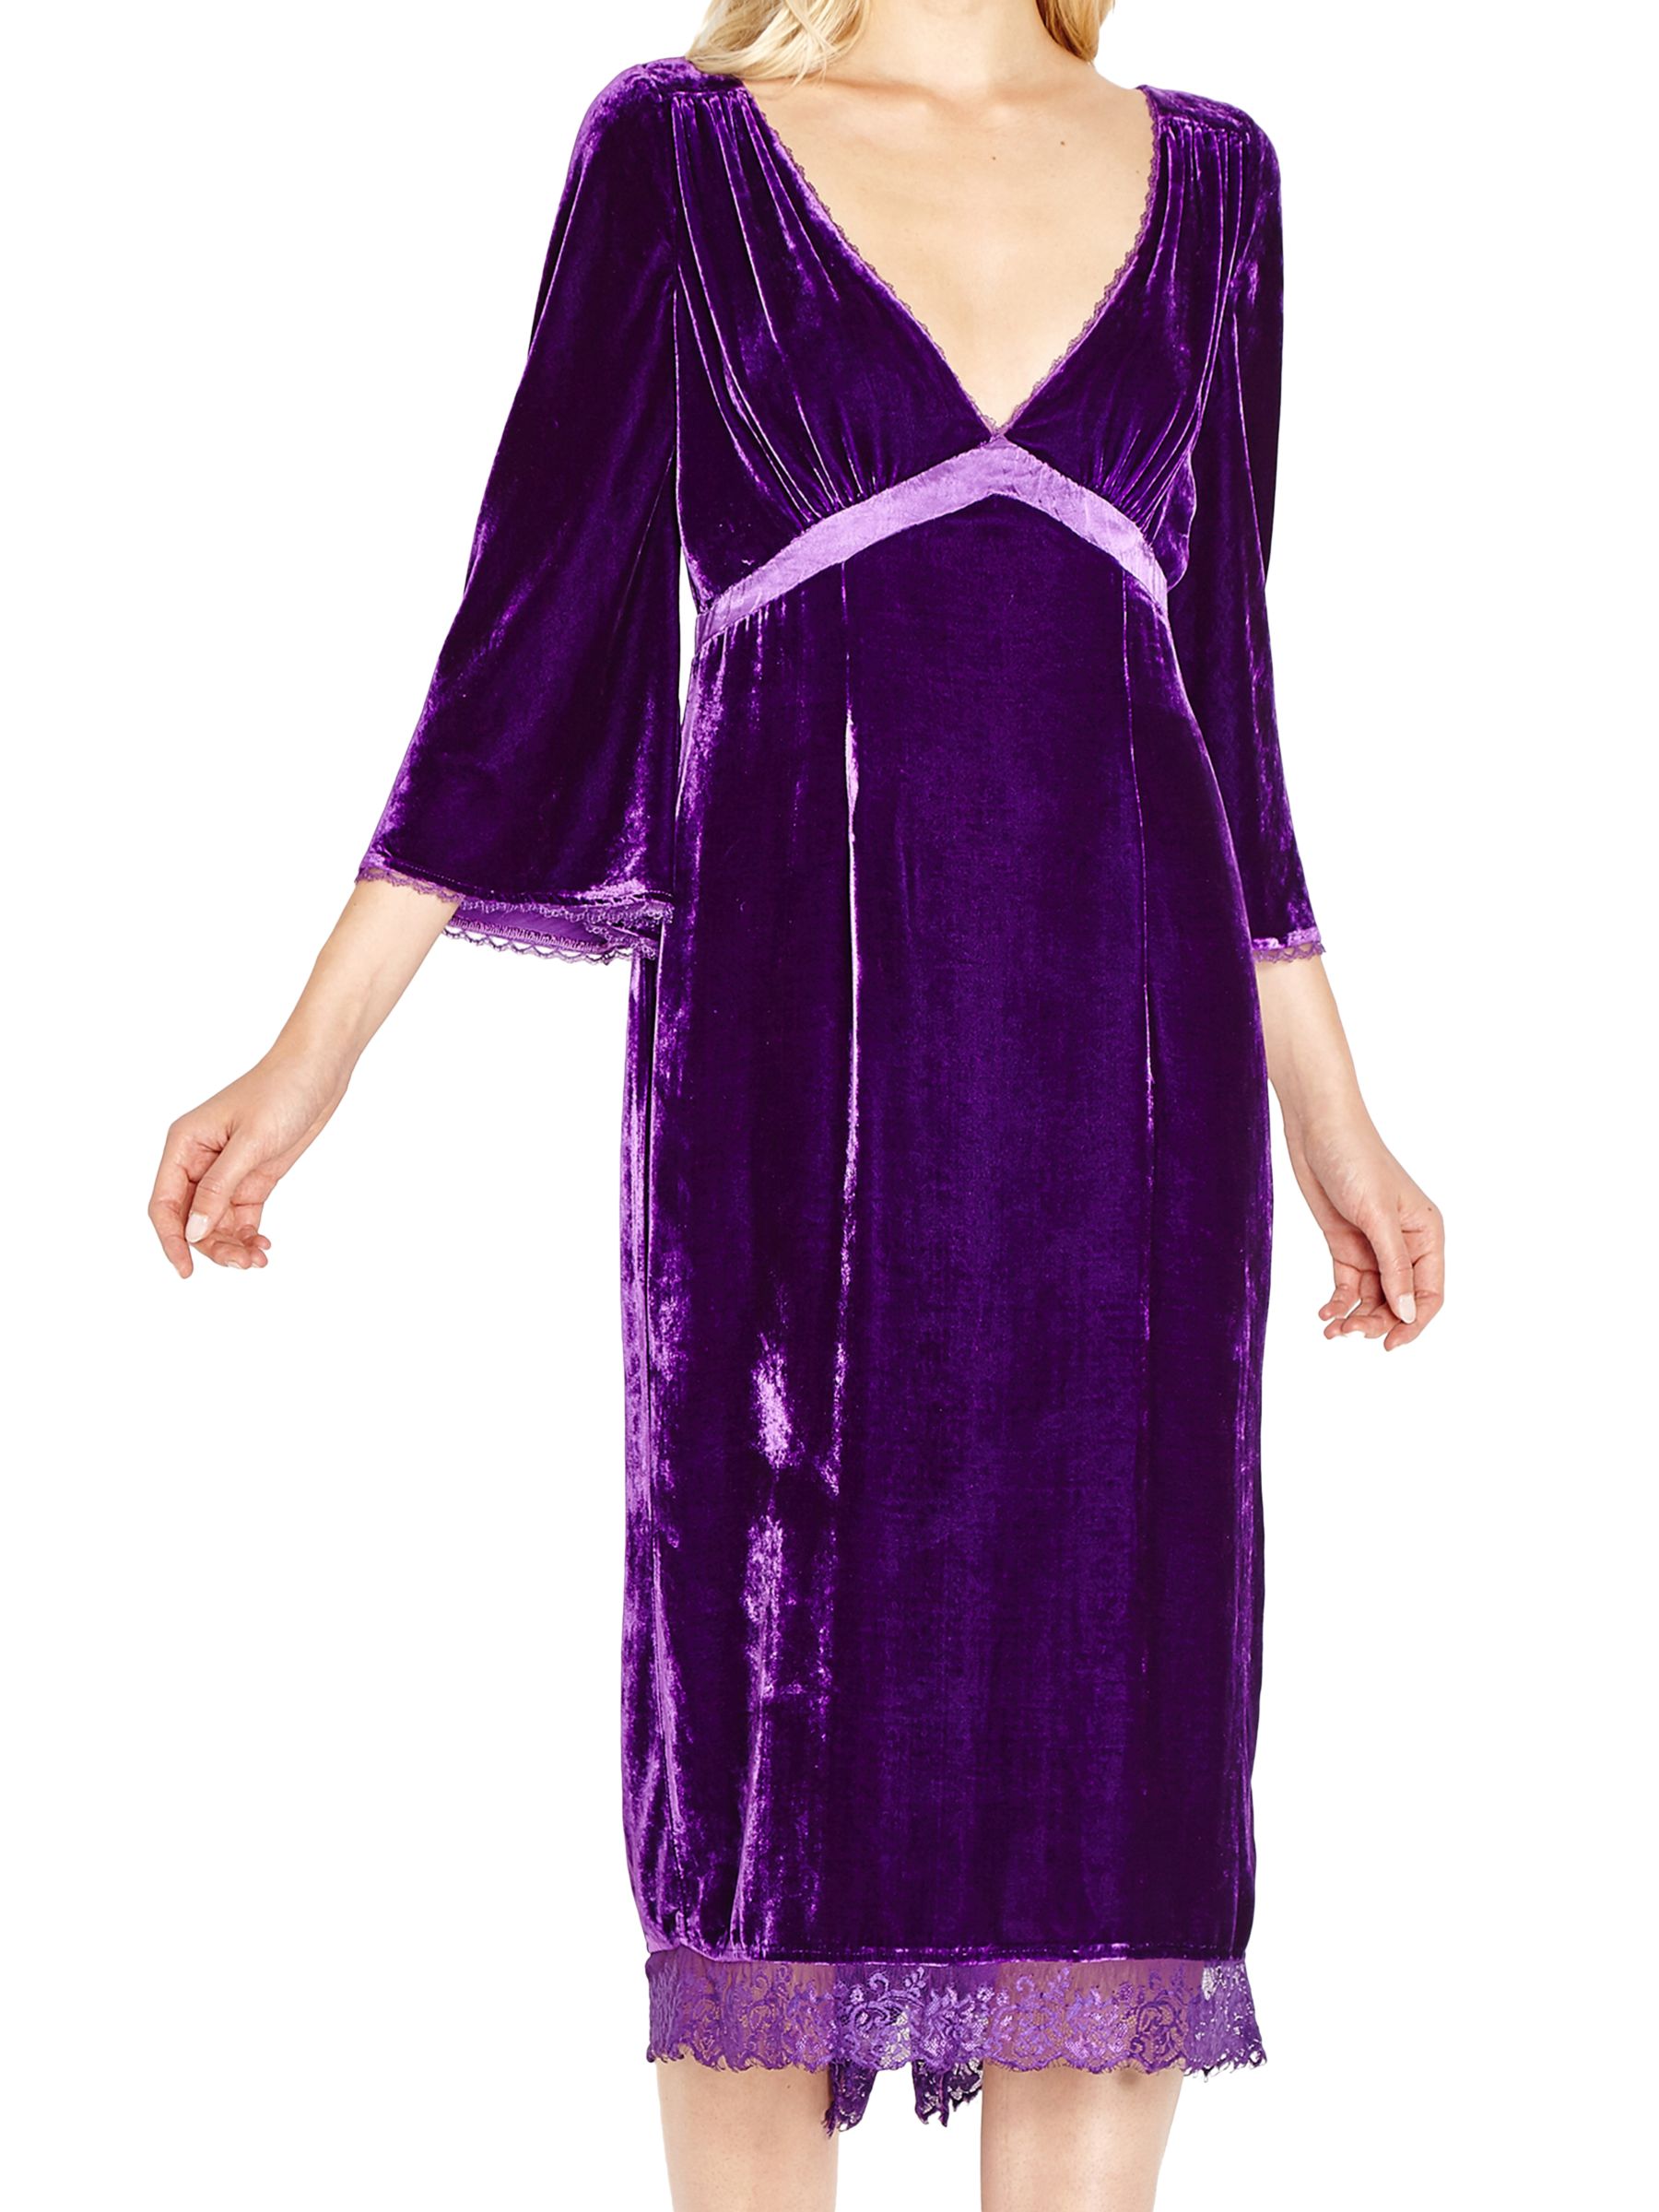 ghost purple dress